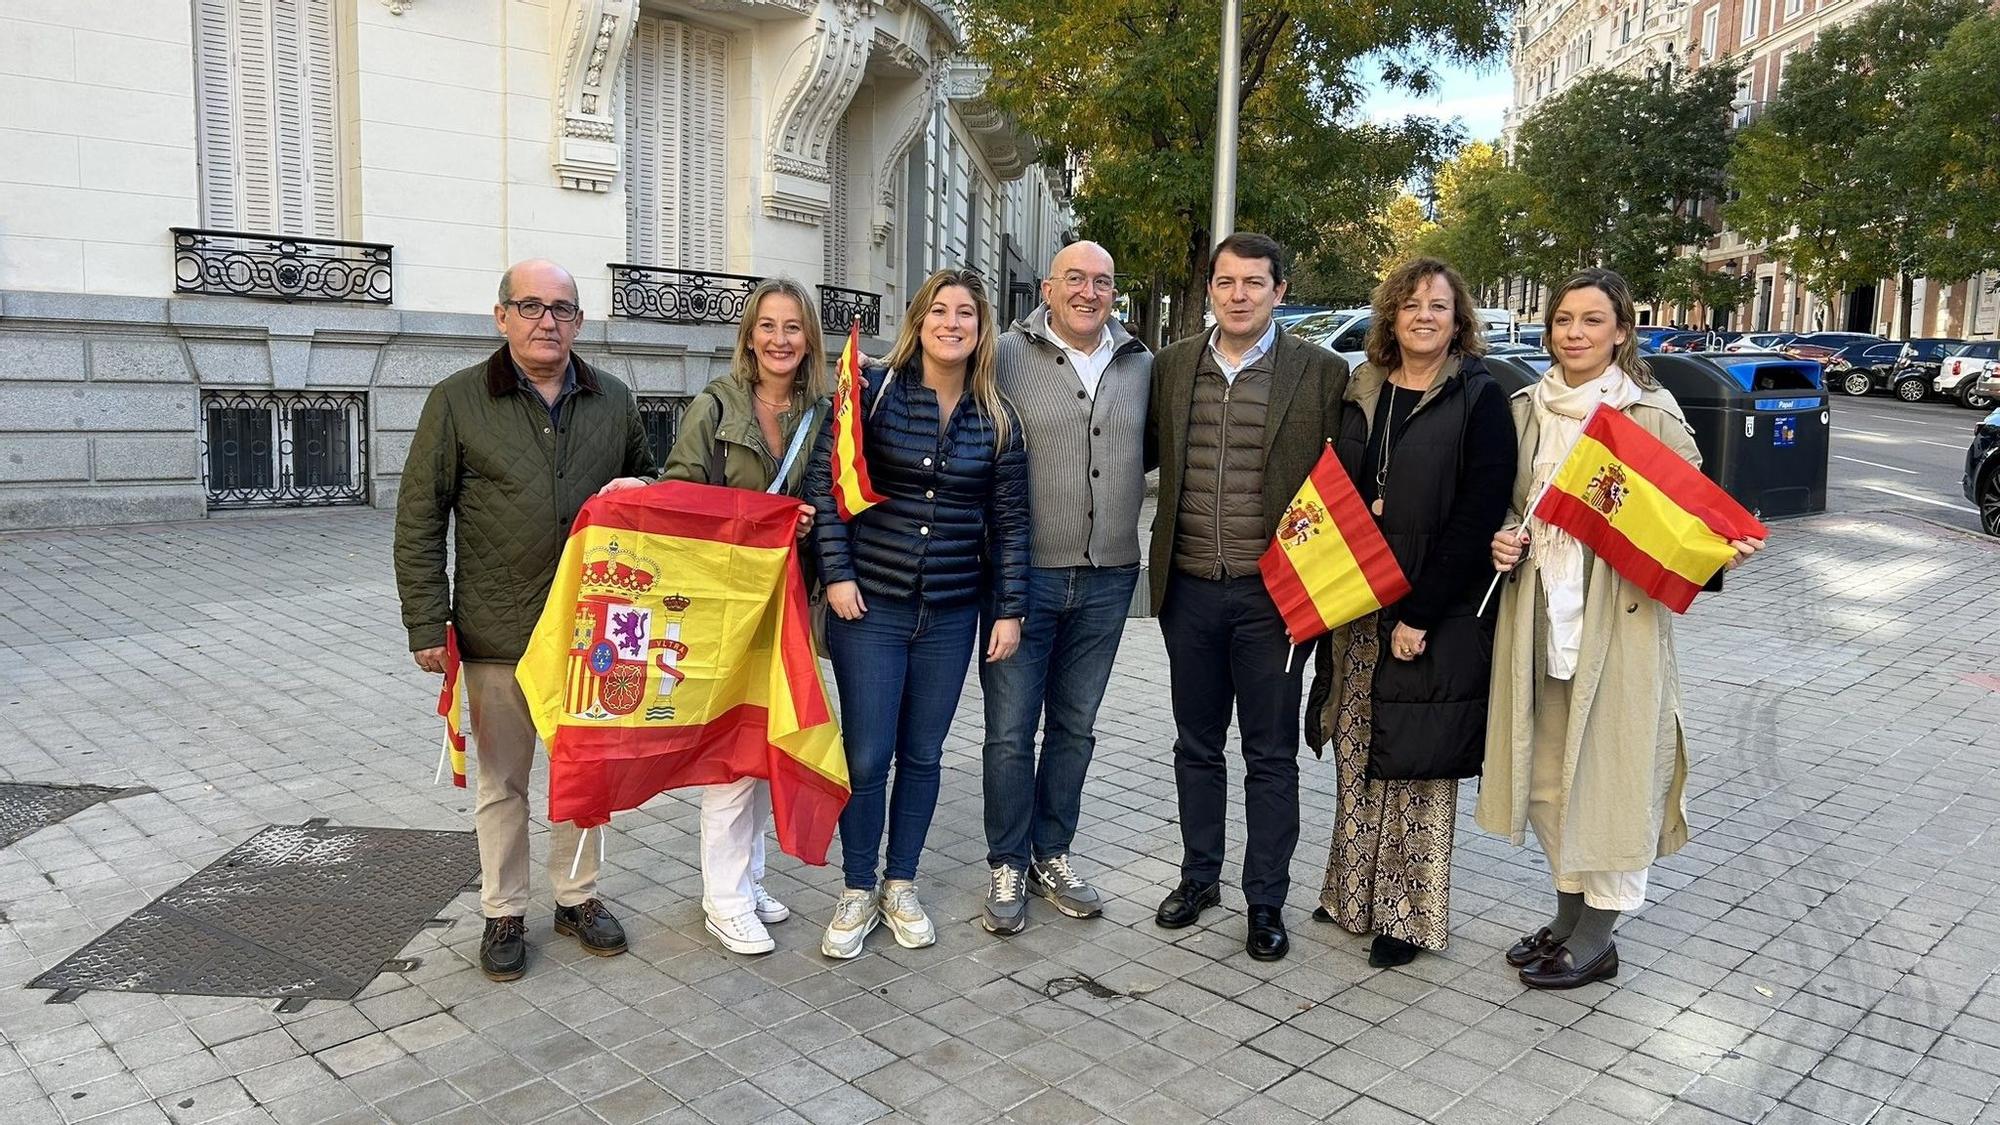 El presidente del Partido Popular de Castilla y León, Alfonso Fernández Mañueco, junto al alcalde de Valladolid, Jesús Julio Carnero, en la manifestación de Madrid de este sábado contra la amnistía